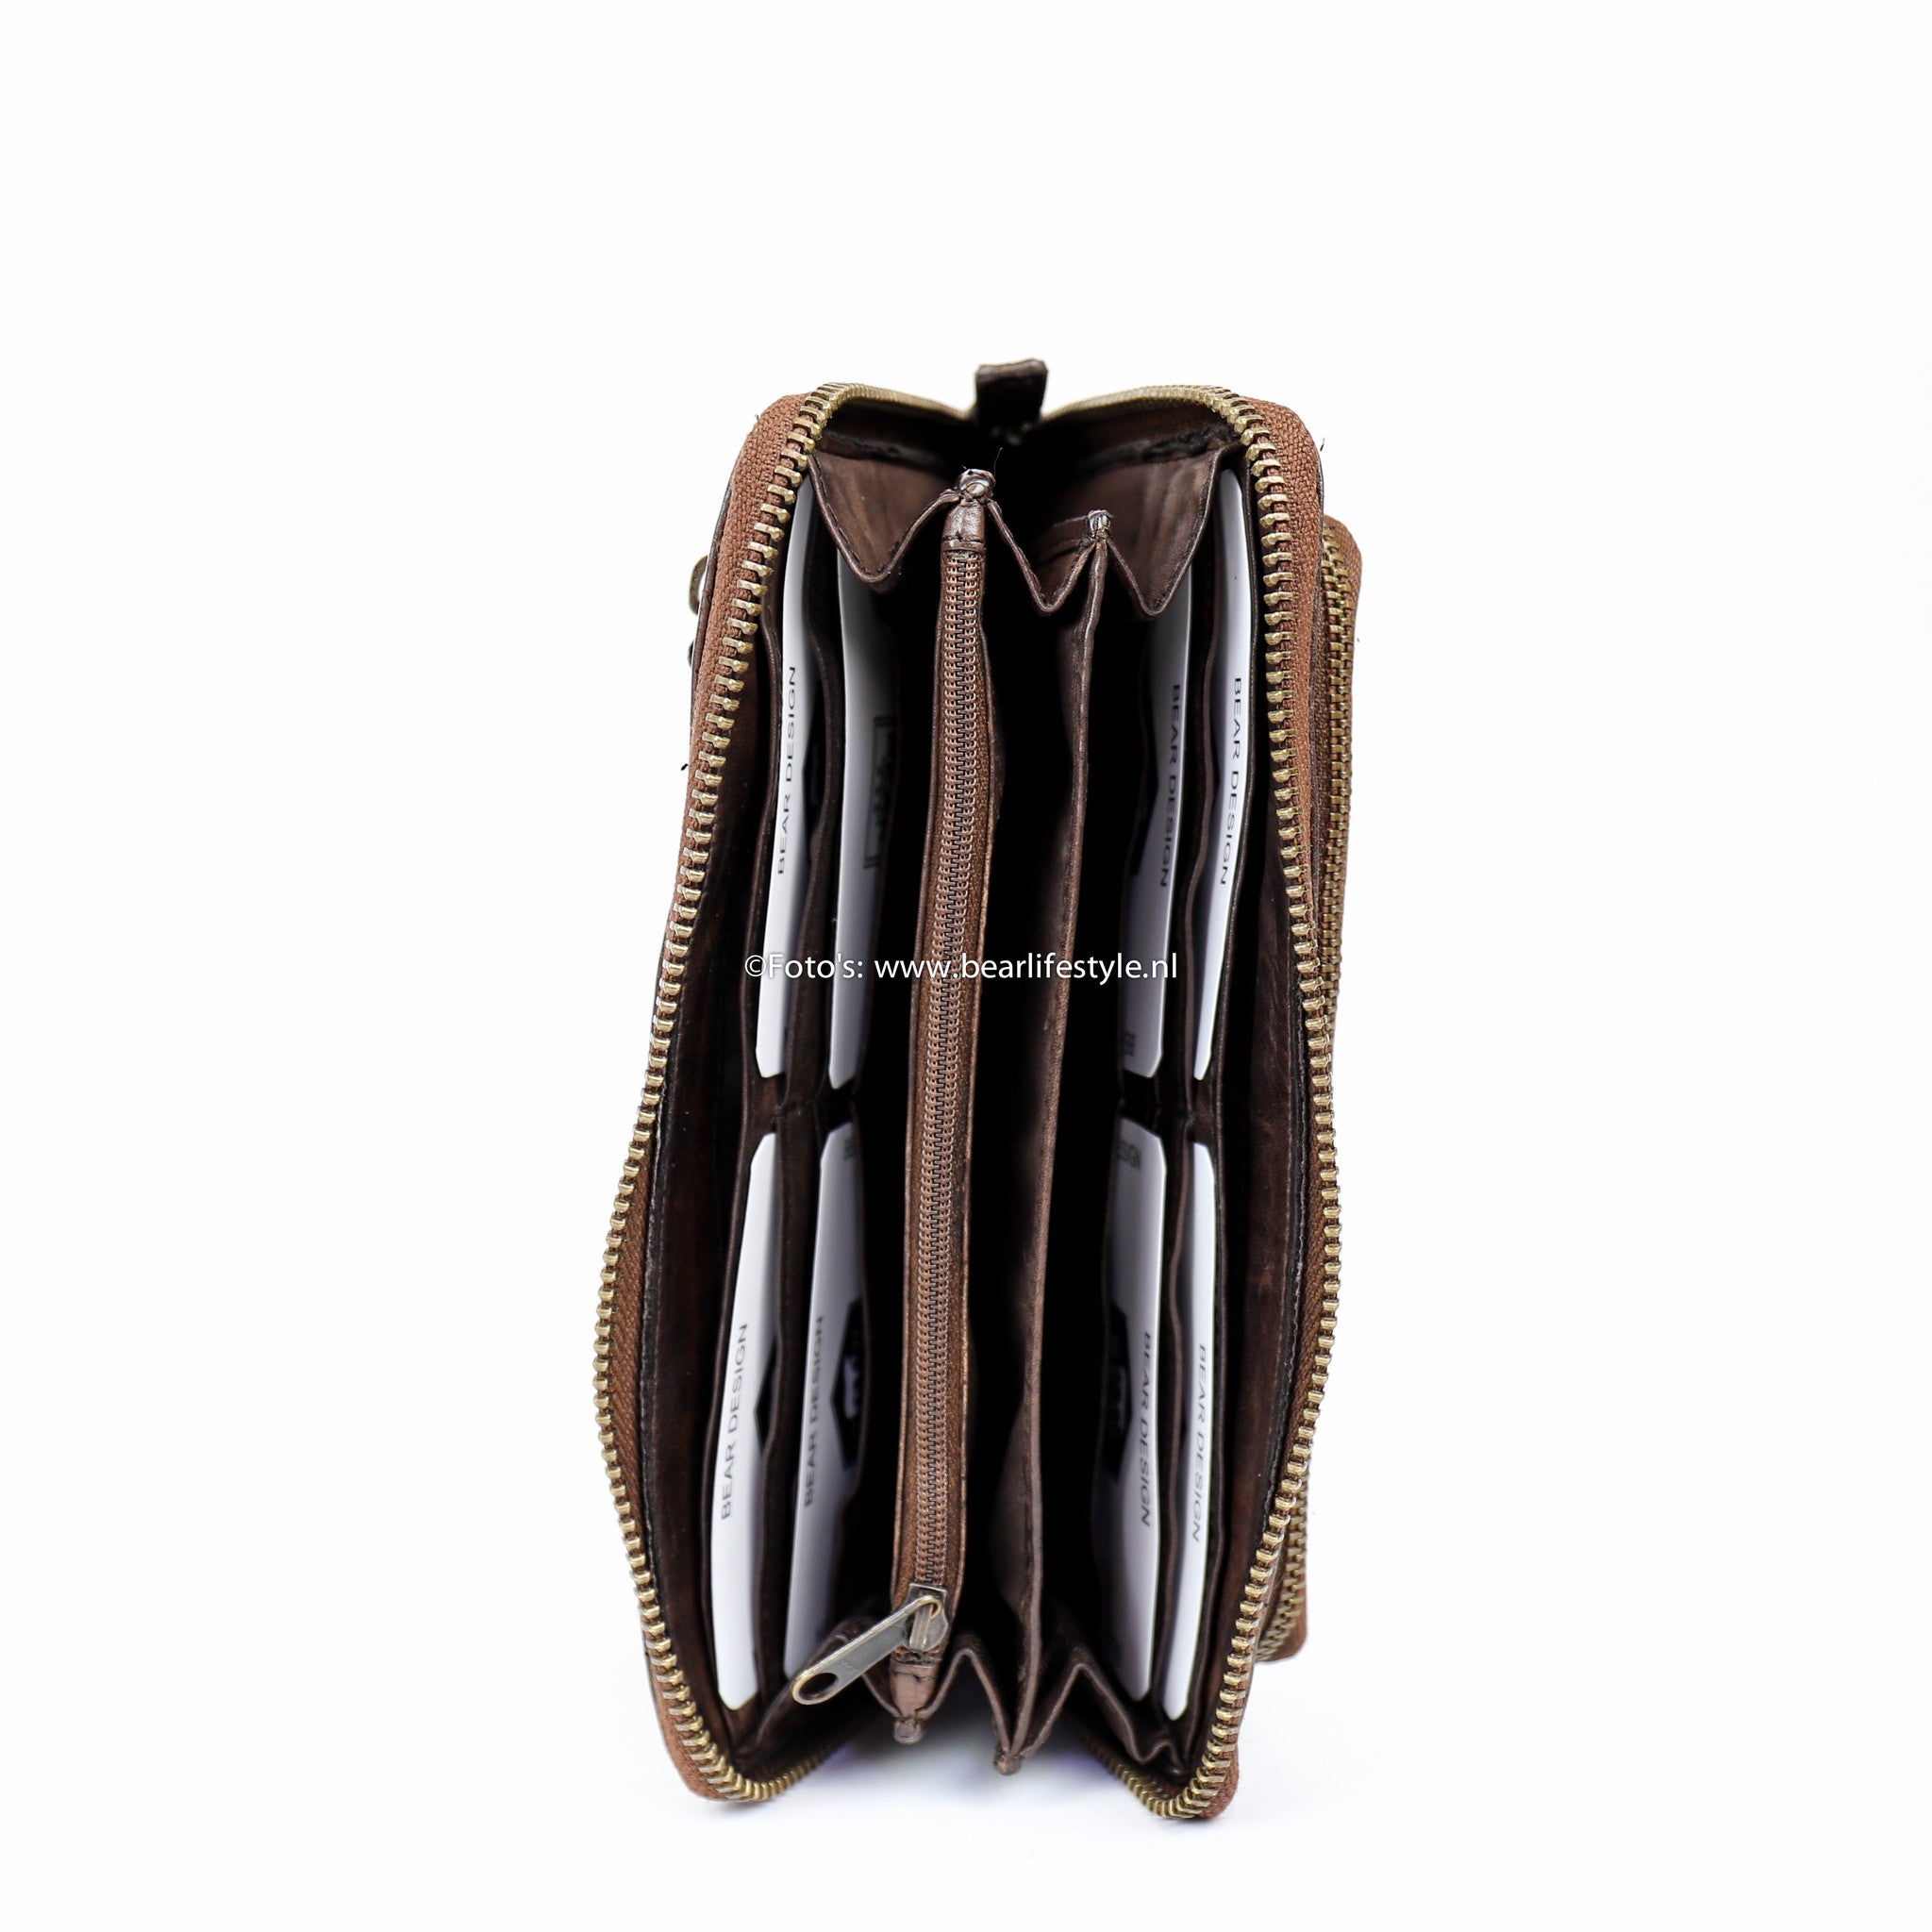 Zipper wallet 'Isa' dark brown - CL 14851